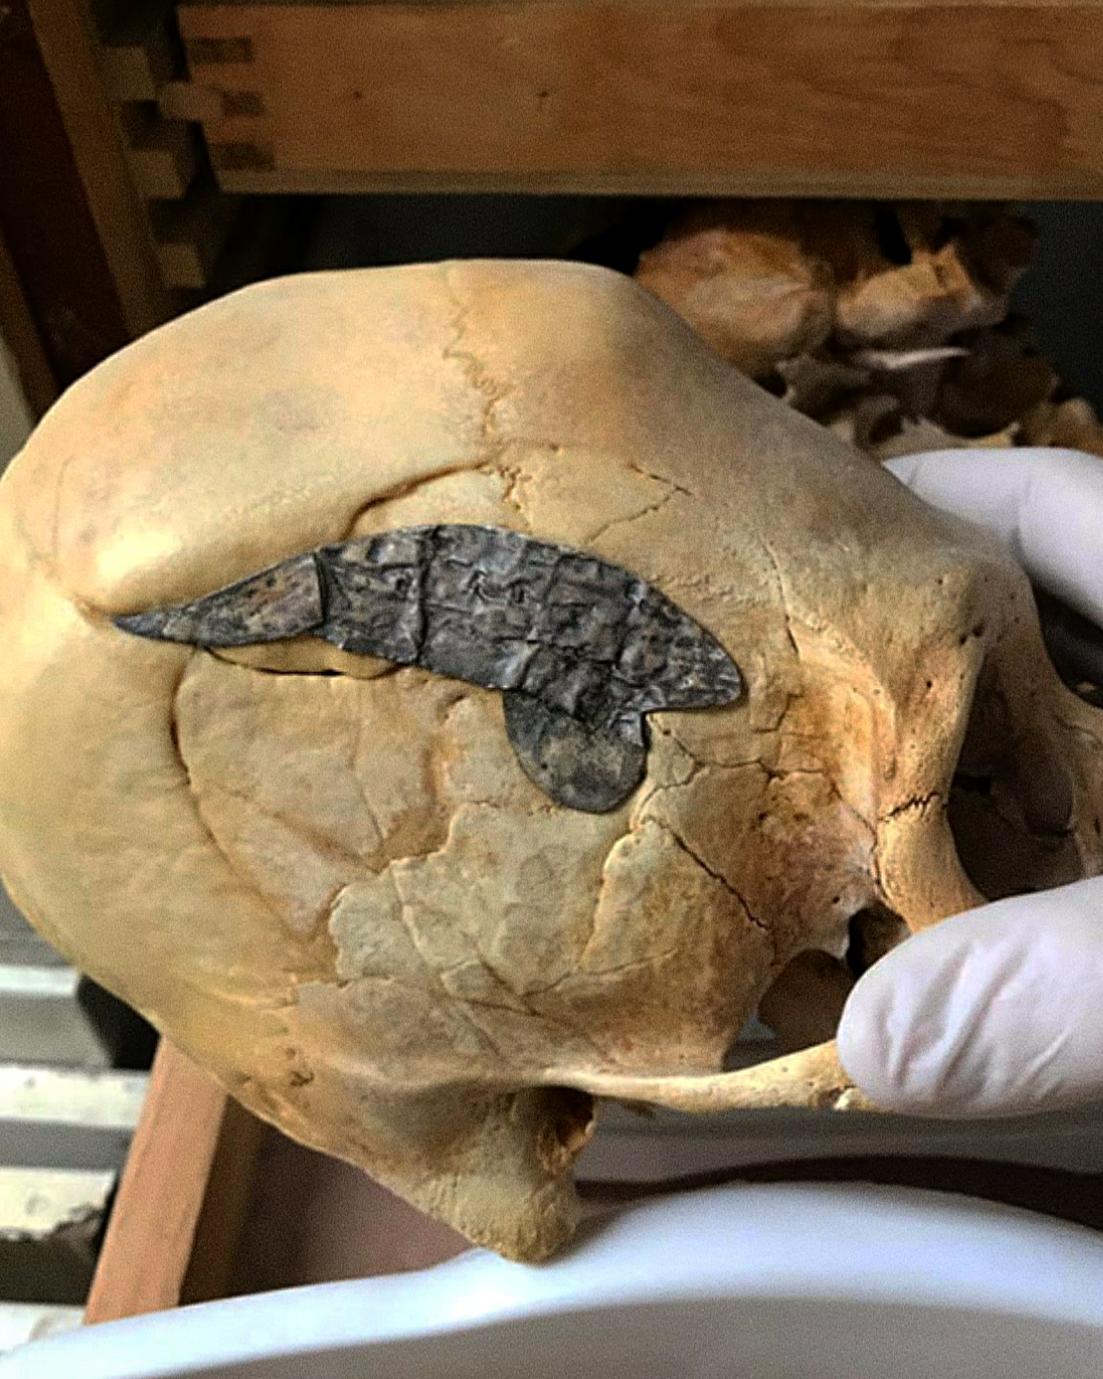 Περουβιανό επίμηκες κρανίο που υποβλήθηκε σε χειρουργική επέμβαση στο κρανίο και εμφύτευσε χειρουργικά μέταλλο για να δέσουν τα οστά αφού τραυματίστηκε στη μάχη πριν από περίπου 2,000 χρόνια